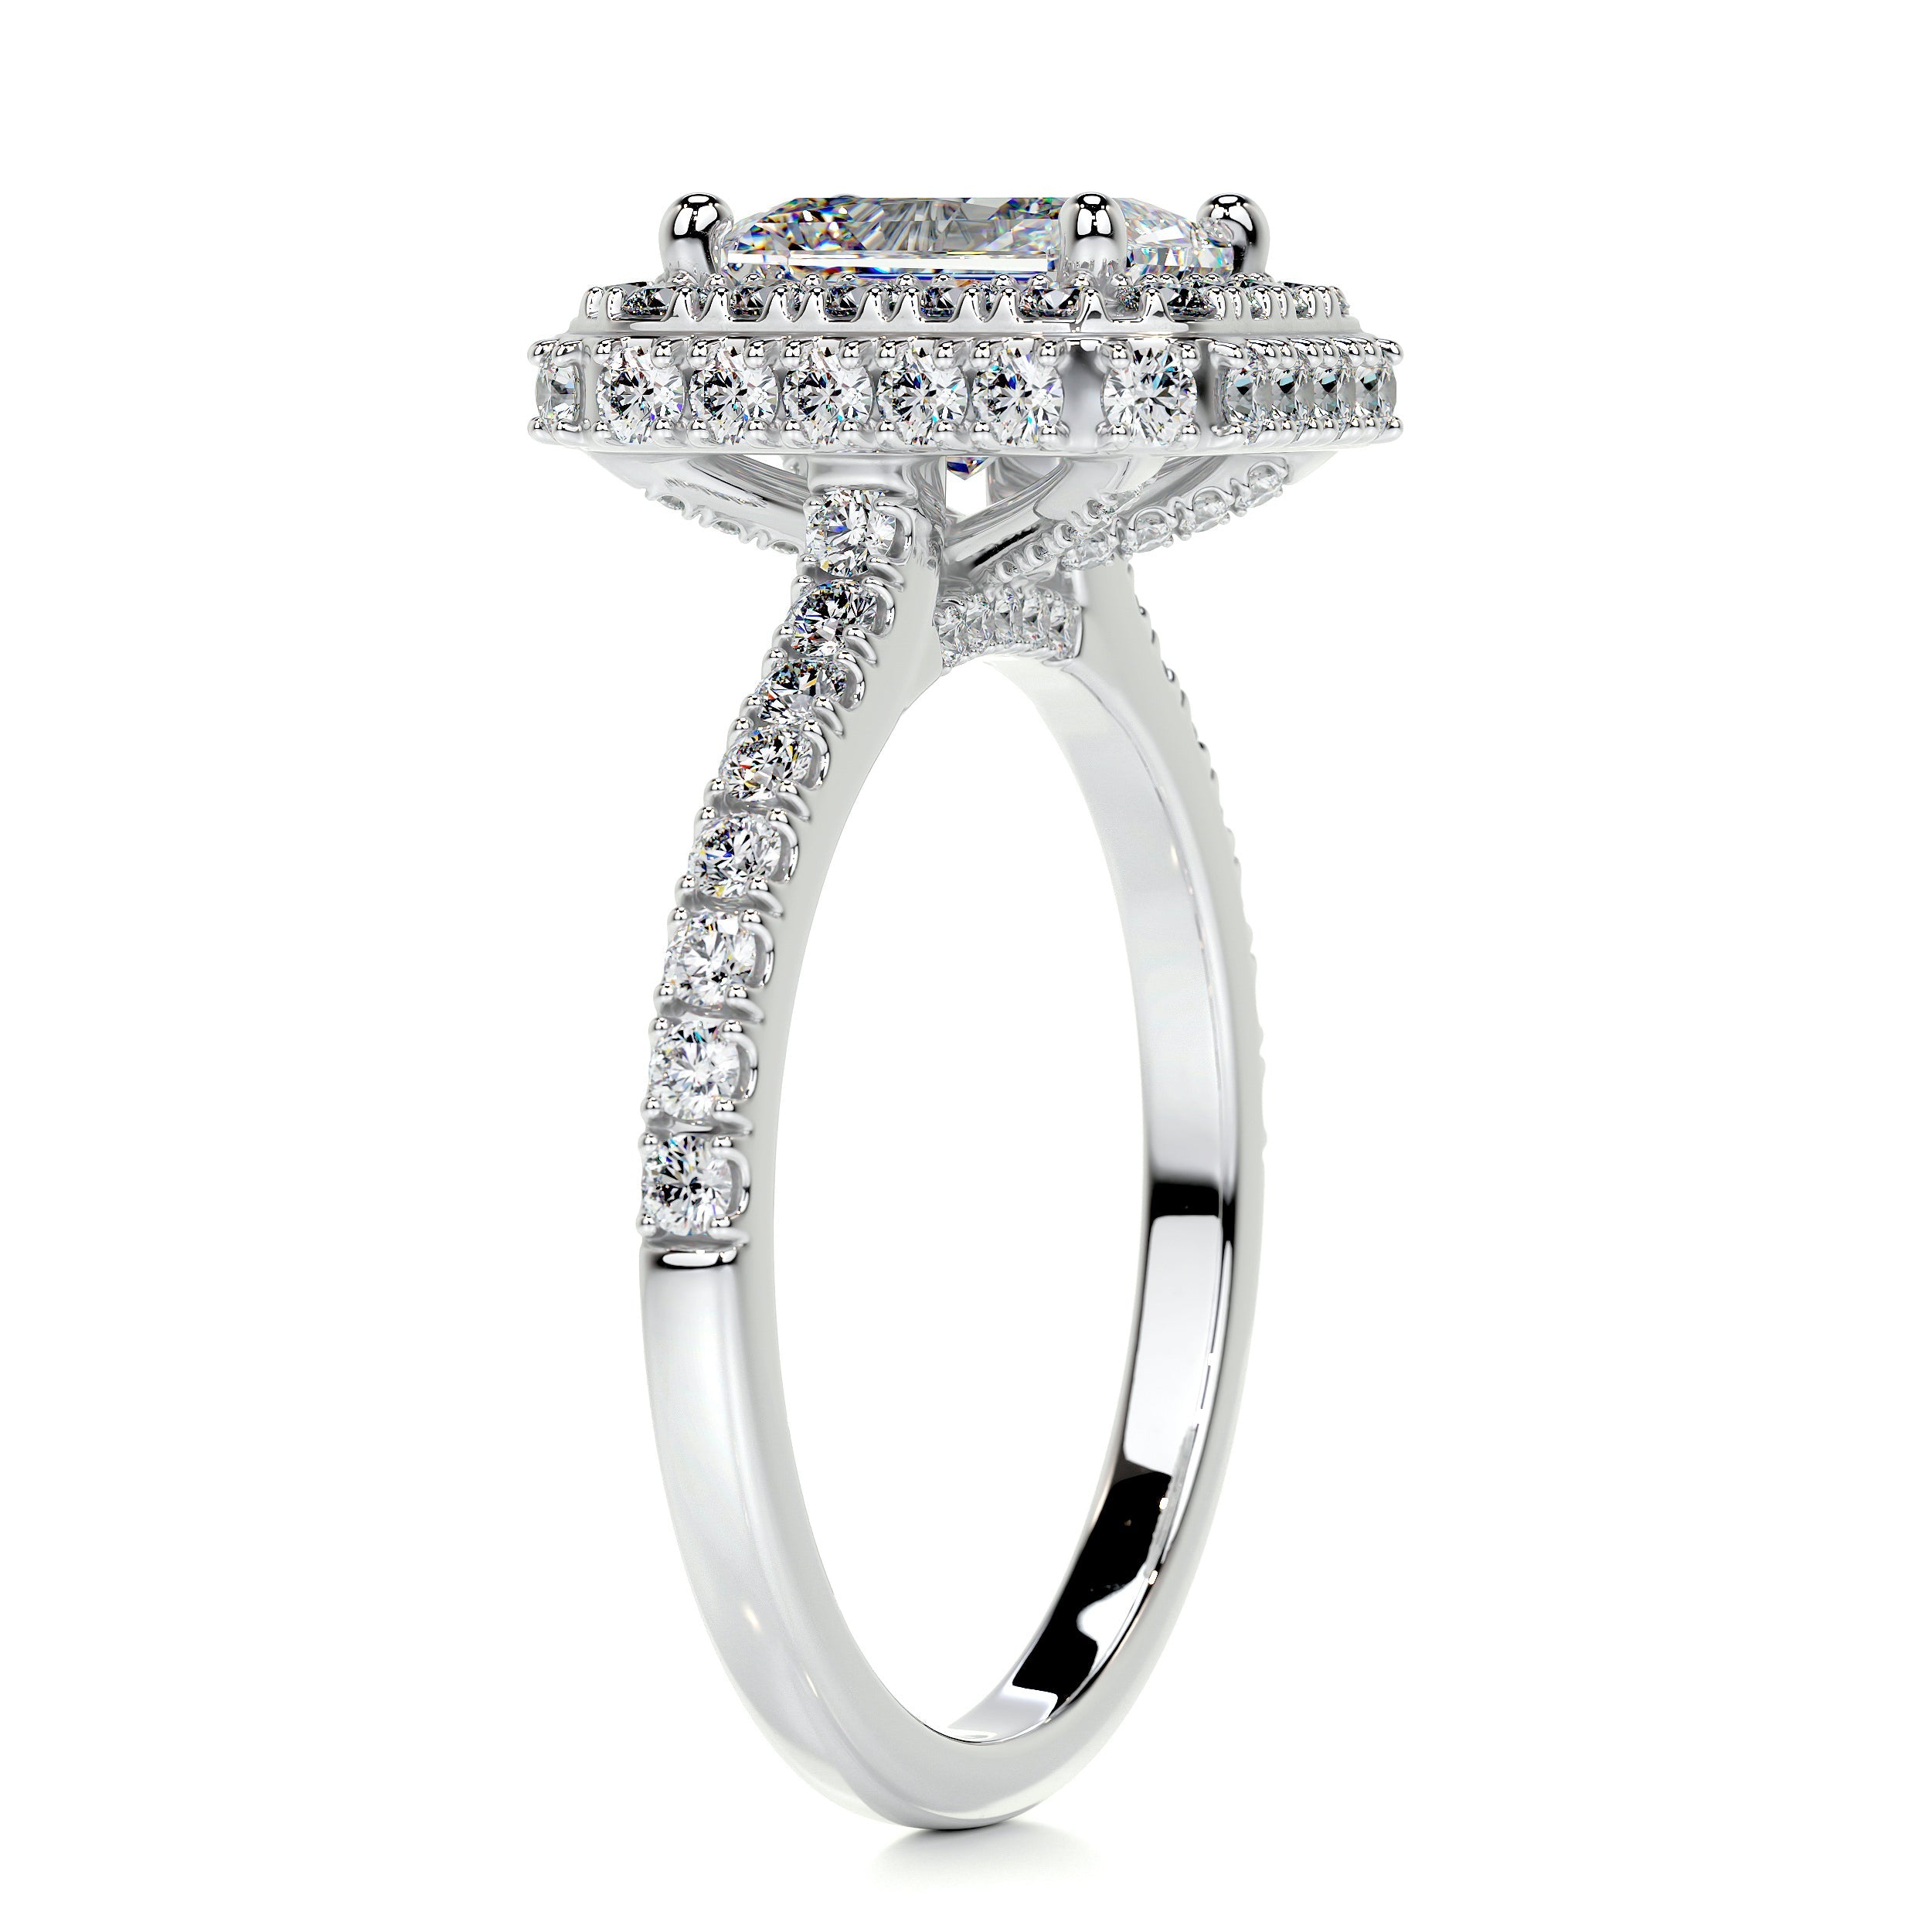 Lana Moissanite & Diamonds Ring   (2.5 Carat) -14K White Gold